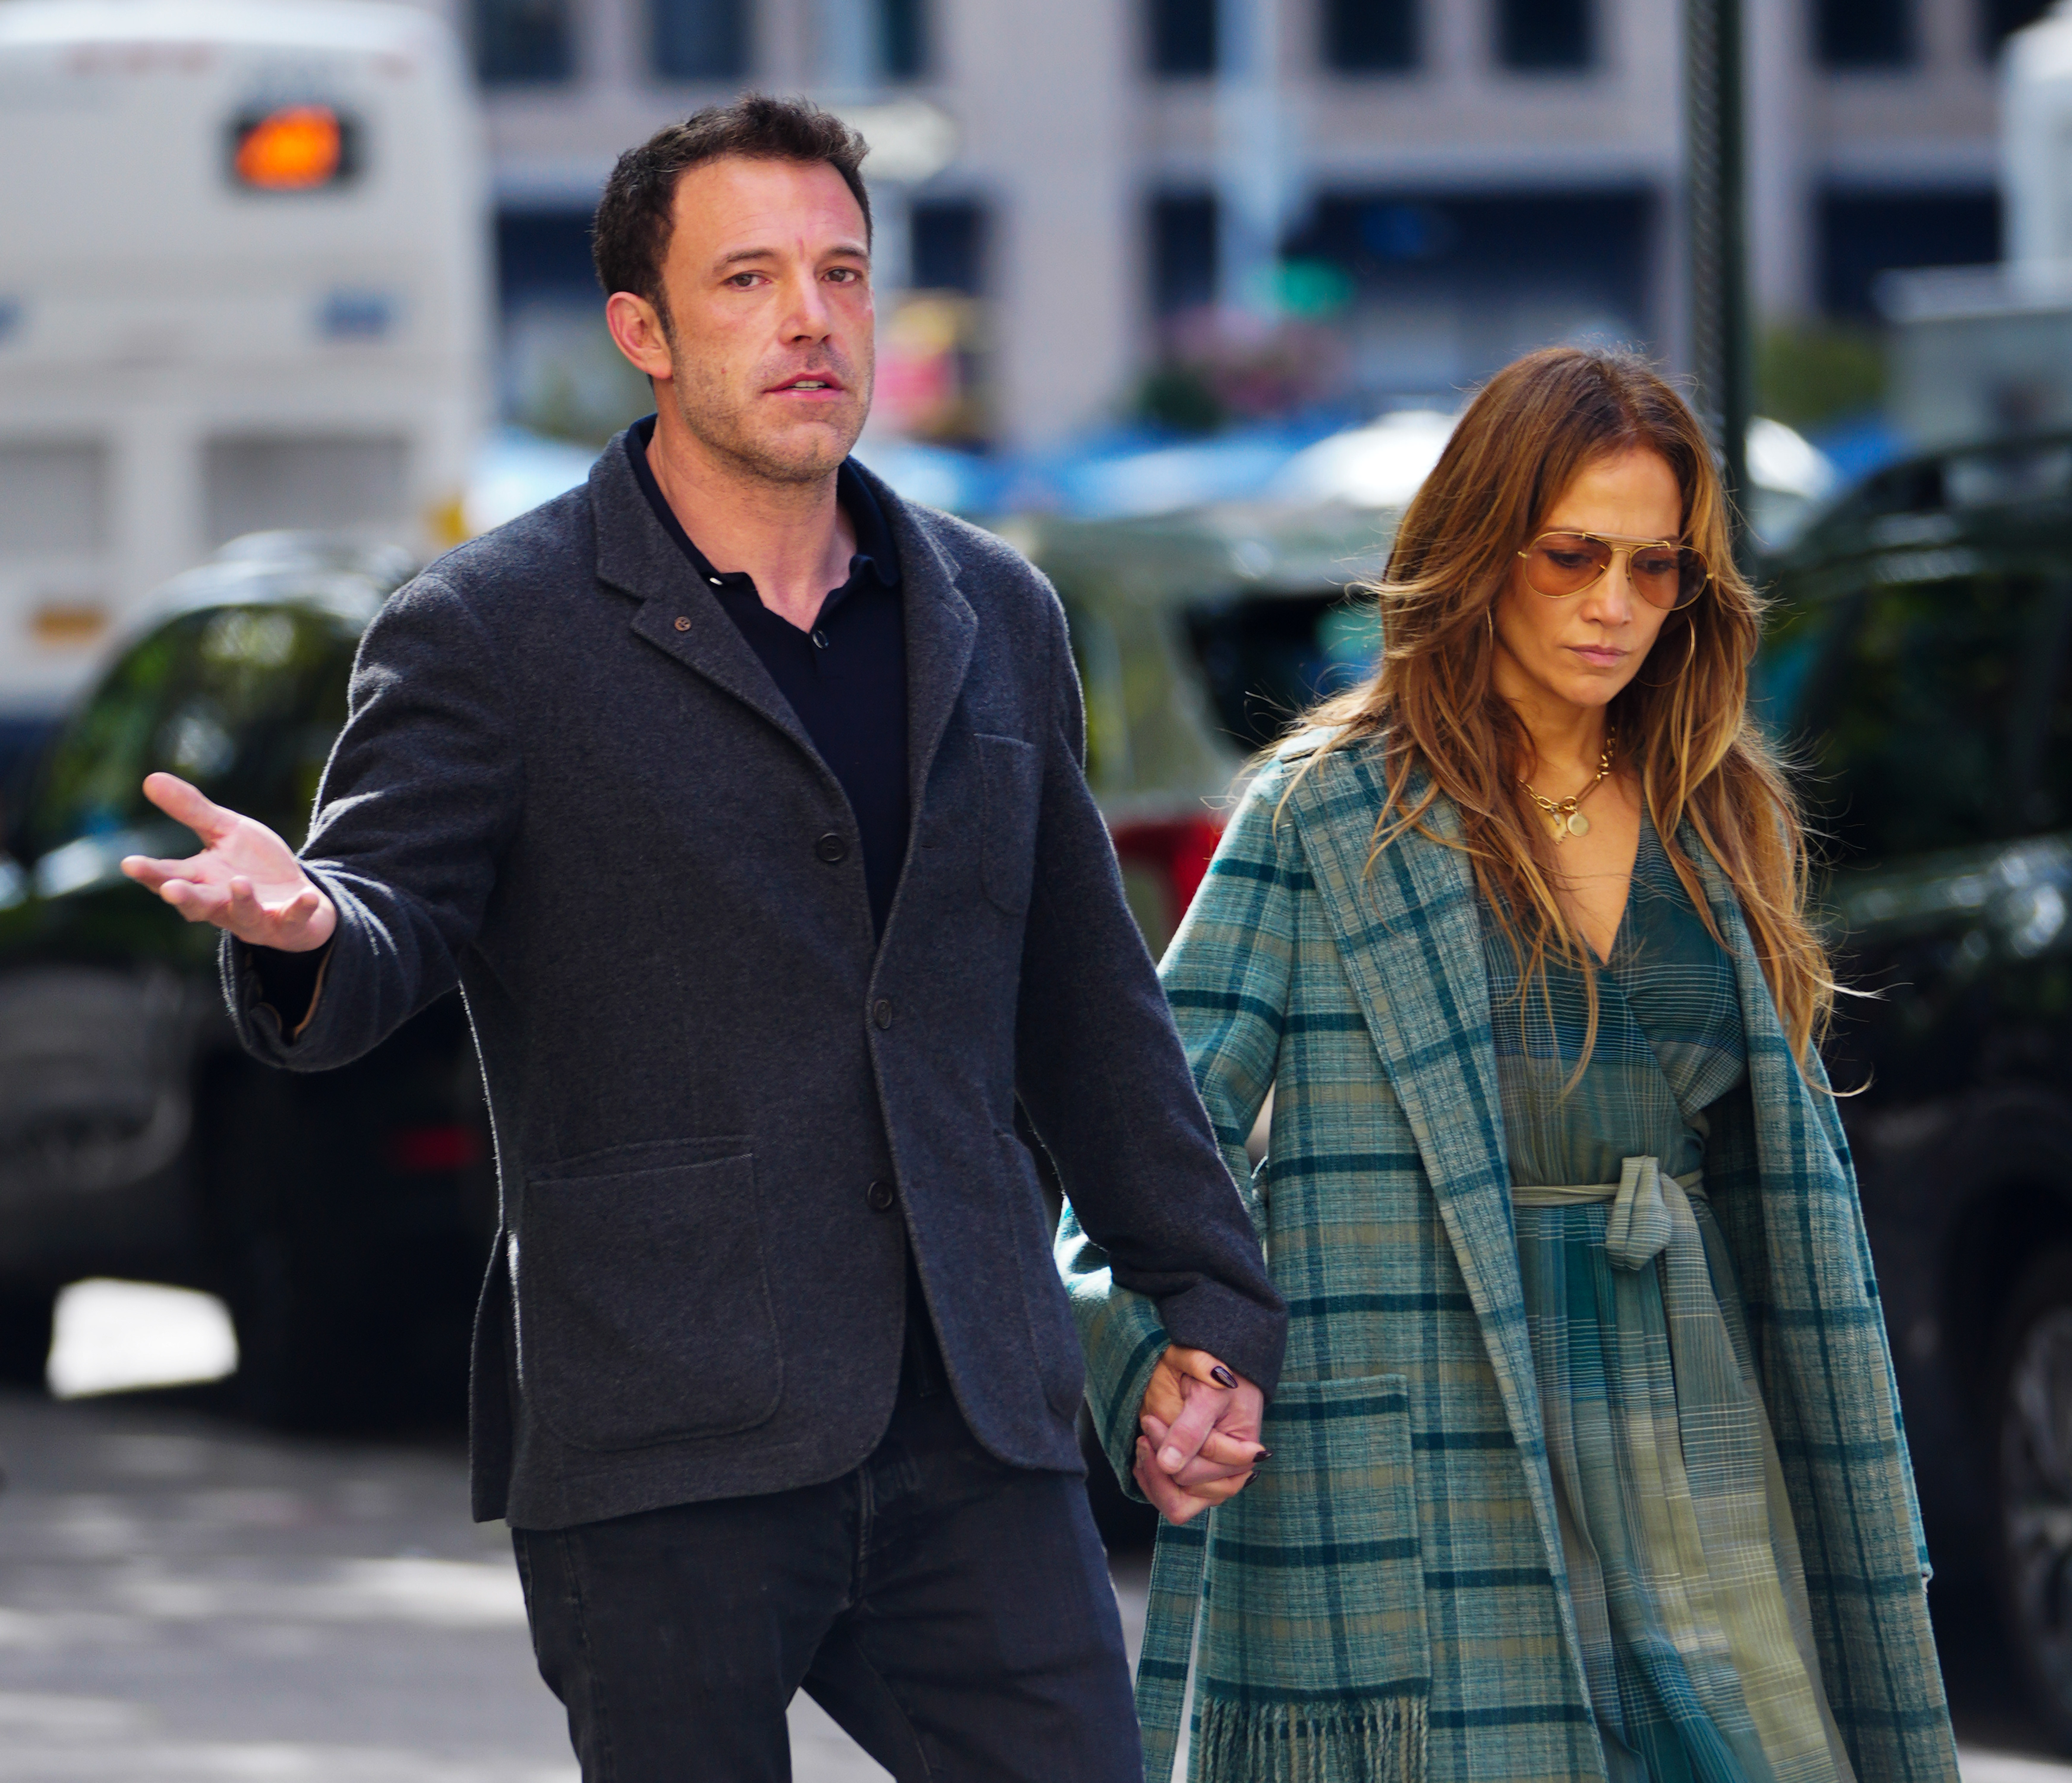 Ben Affleck et Jennifer Lopez repérés lors d'une sortie à New York le 26 septembre 2021 | Source : Getty Images